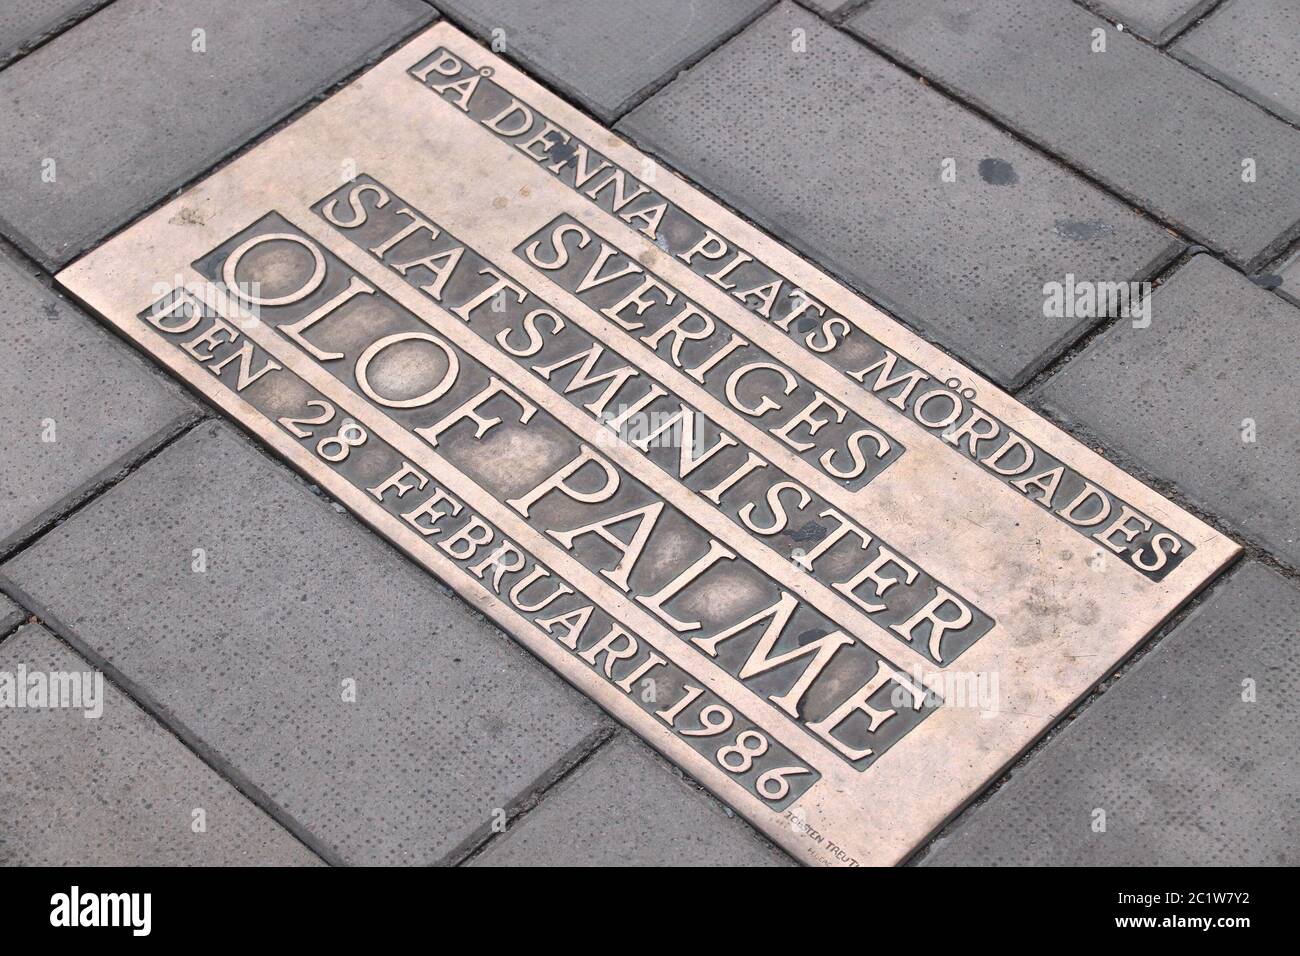 STOCKHOLM, SCHWEDEN - 22. AUGUST 2018: Gedenkschild am Ort des Mordes an Olof Palme, dem schwedischen Ministerpräsidenten, in der Sveavagen Straße in Stockholm. Th Stockfoto